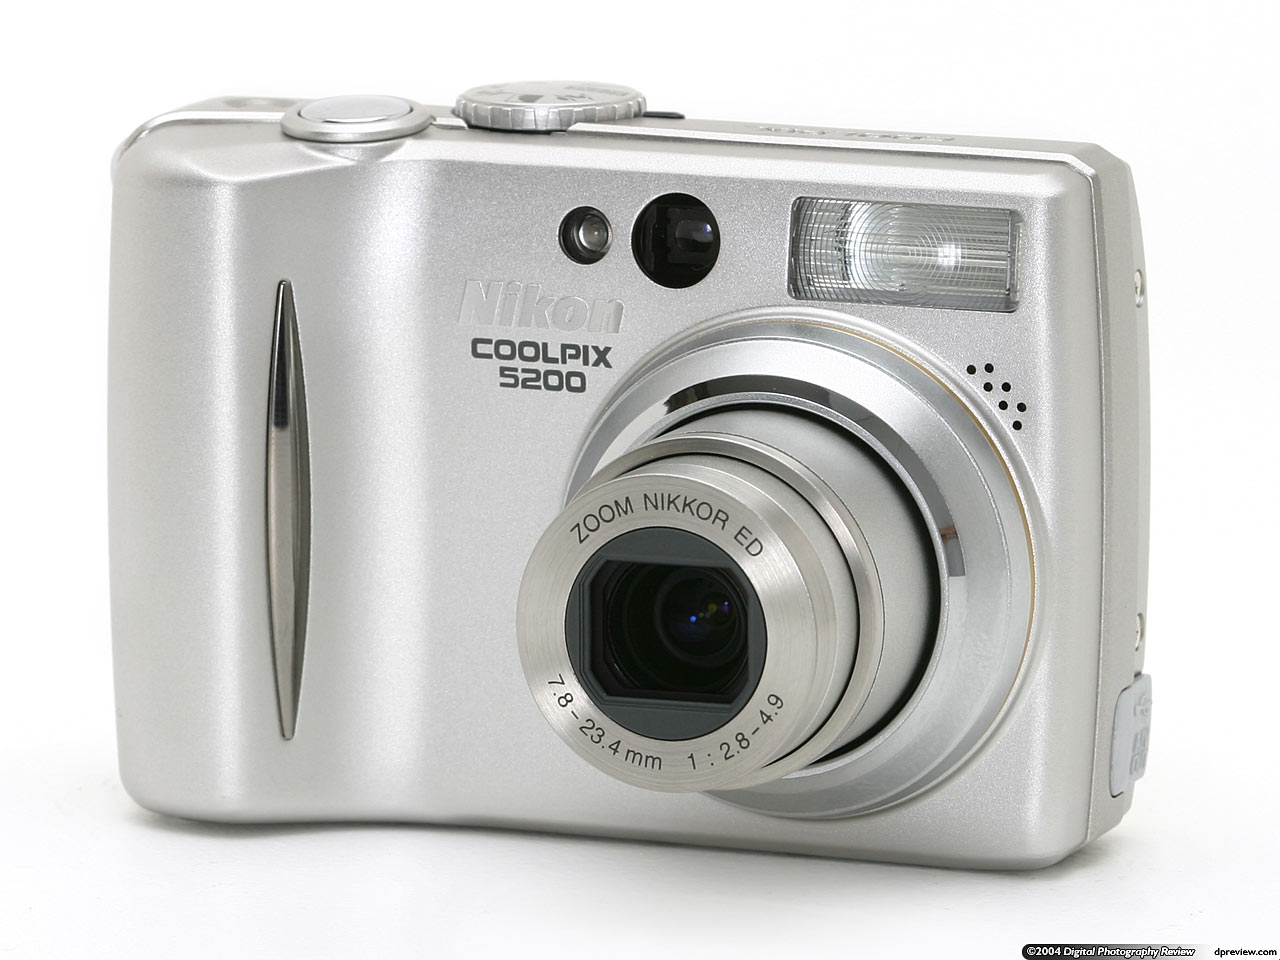 Nikon Coolpix 5200 Digital Camera